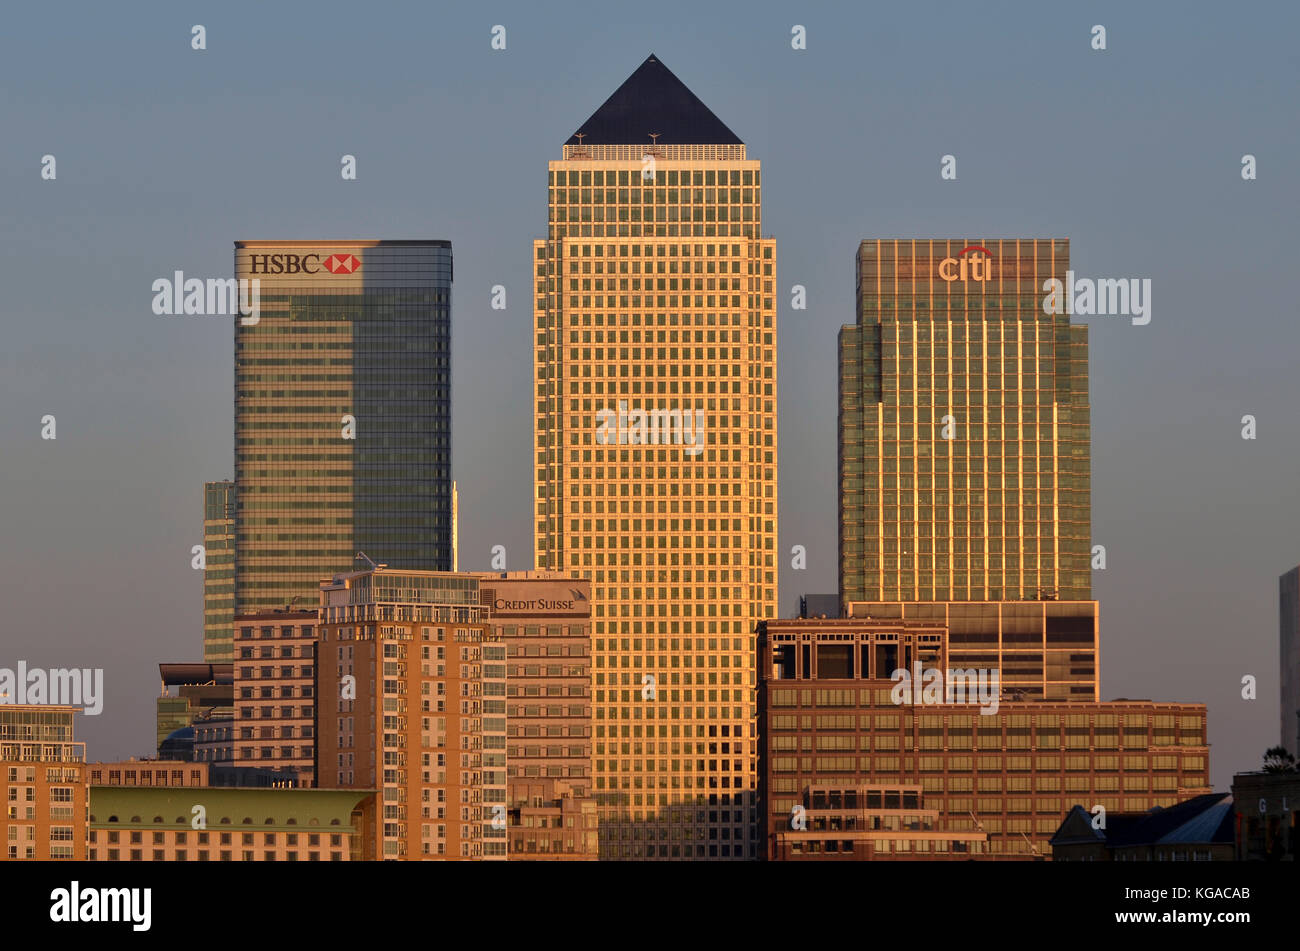 Canary Wharf, London, UK. HSBC, n°1 Canada Square, Citi et Credit Suisse édifices toutes visibles. Banque D'Images